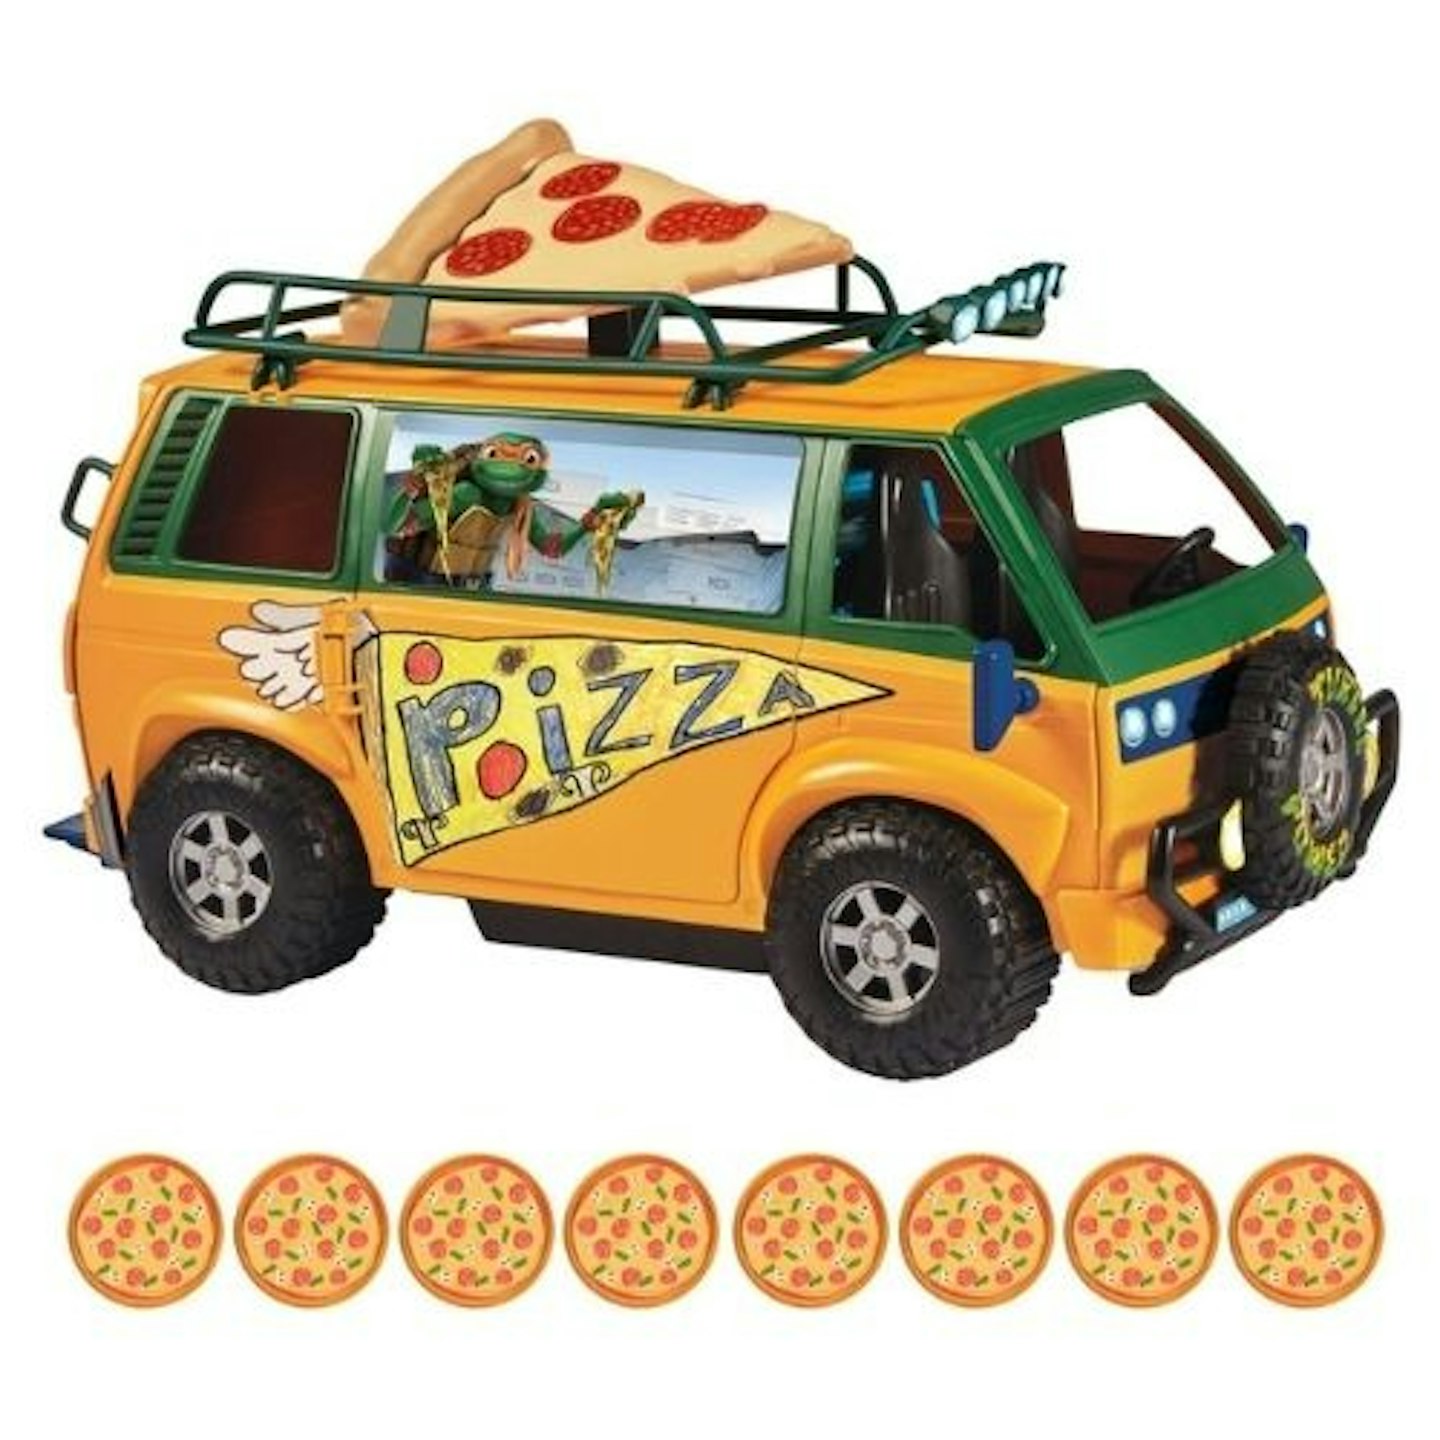 Top Christmas Toys: Teenage Mutant Ninja Turtles Mutant Mayhem - Pizza Fire Delivery Van Playset